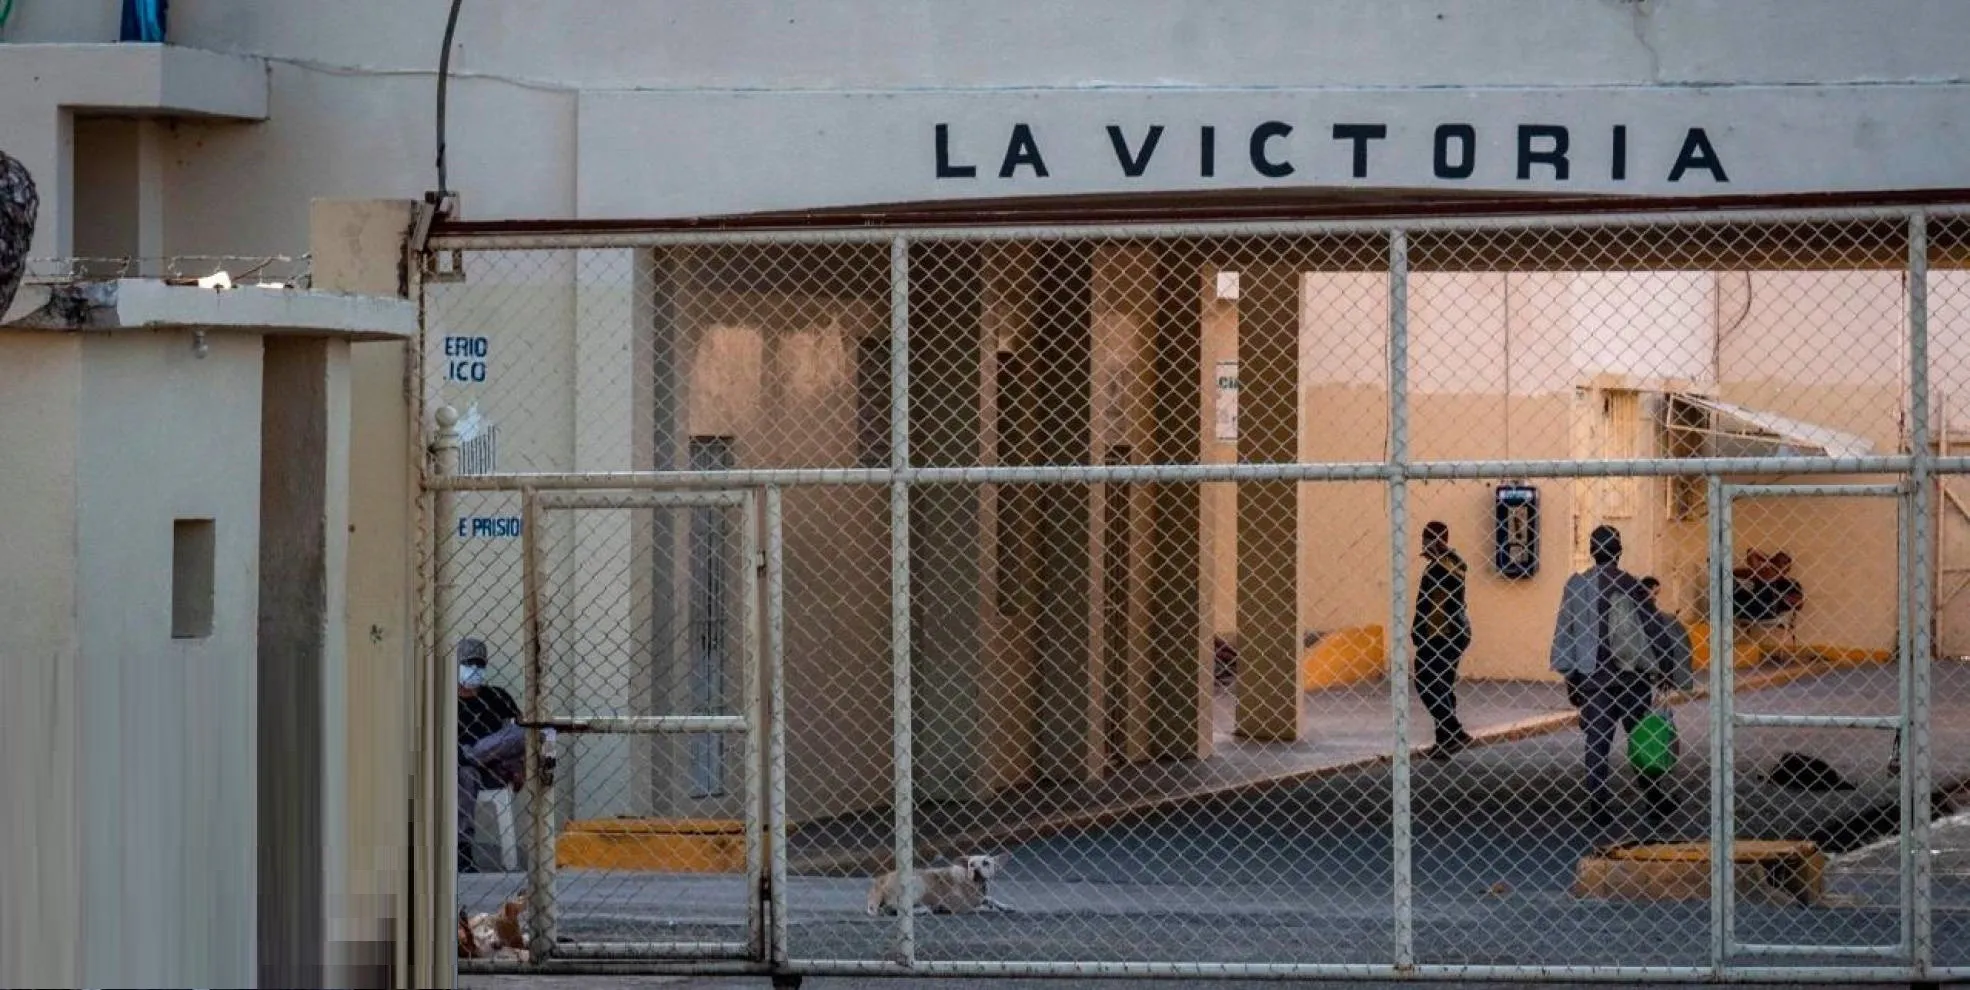 Servicios Penitenciarios asegura La Victoria está bajo control tras incendio